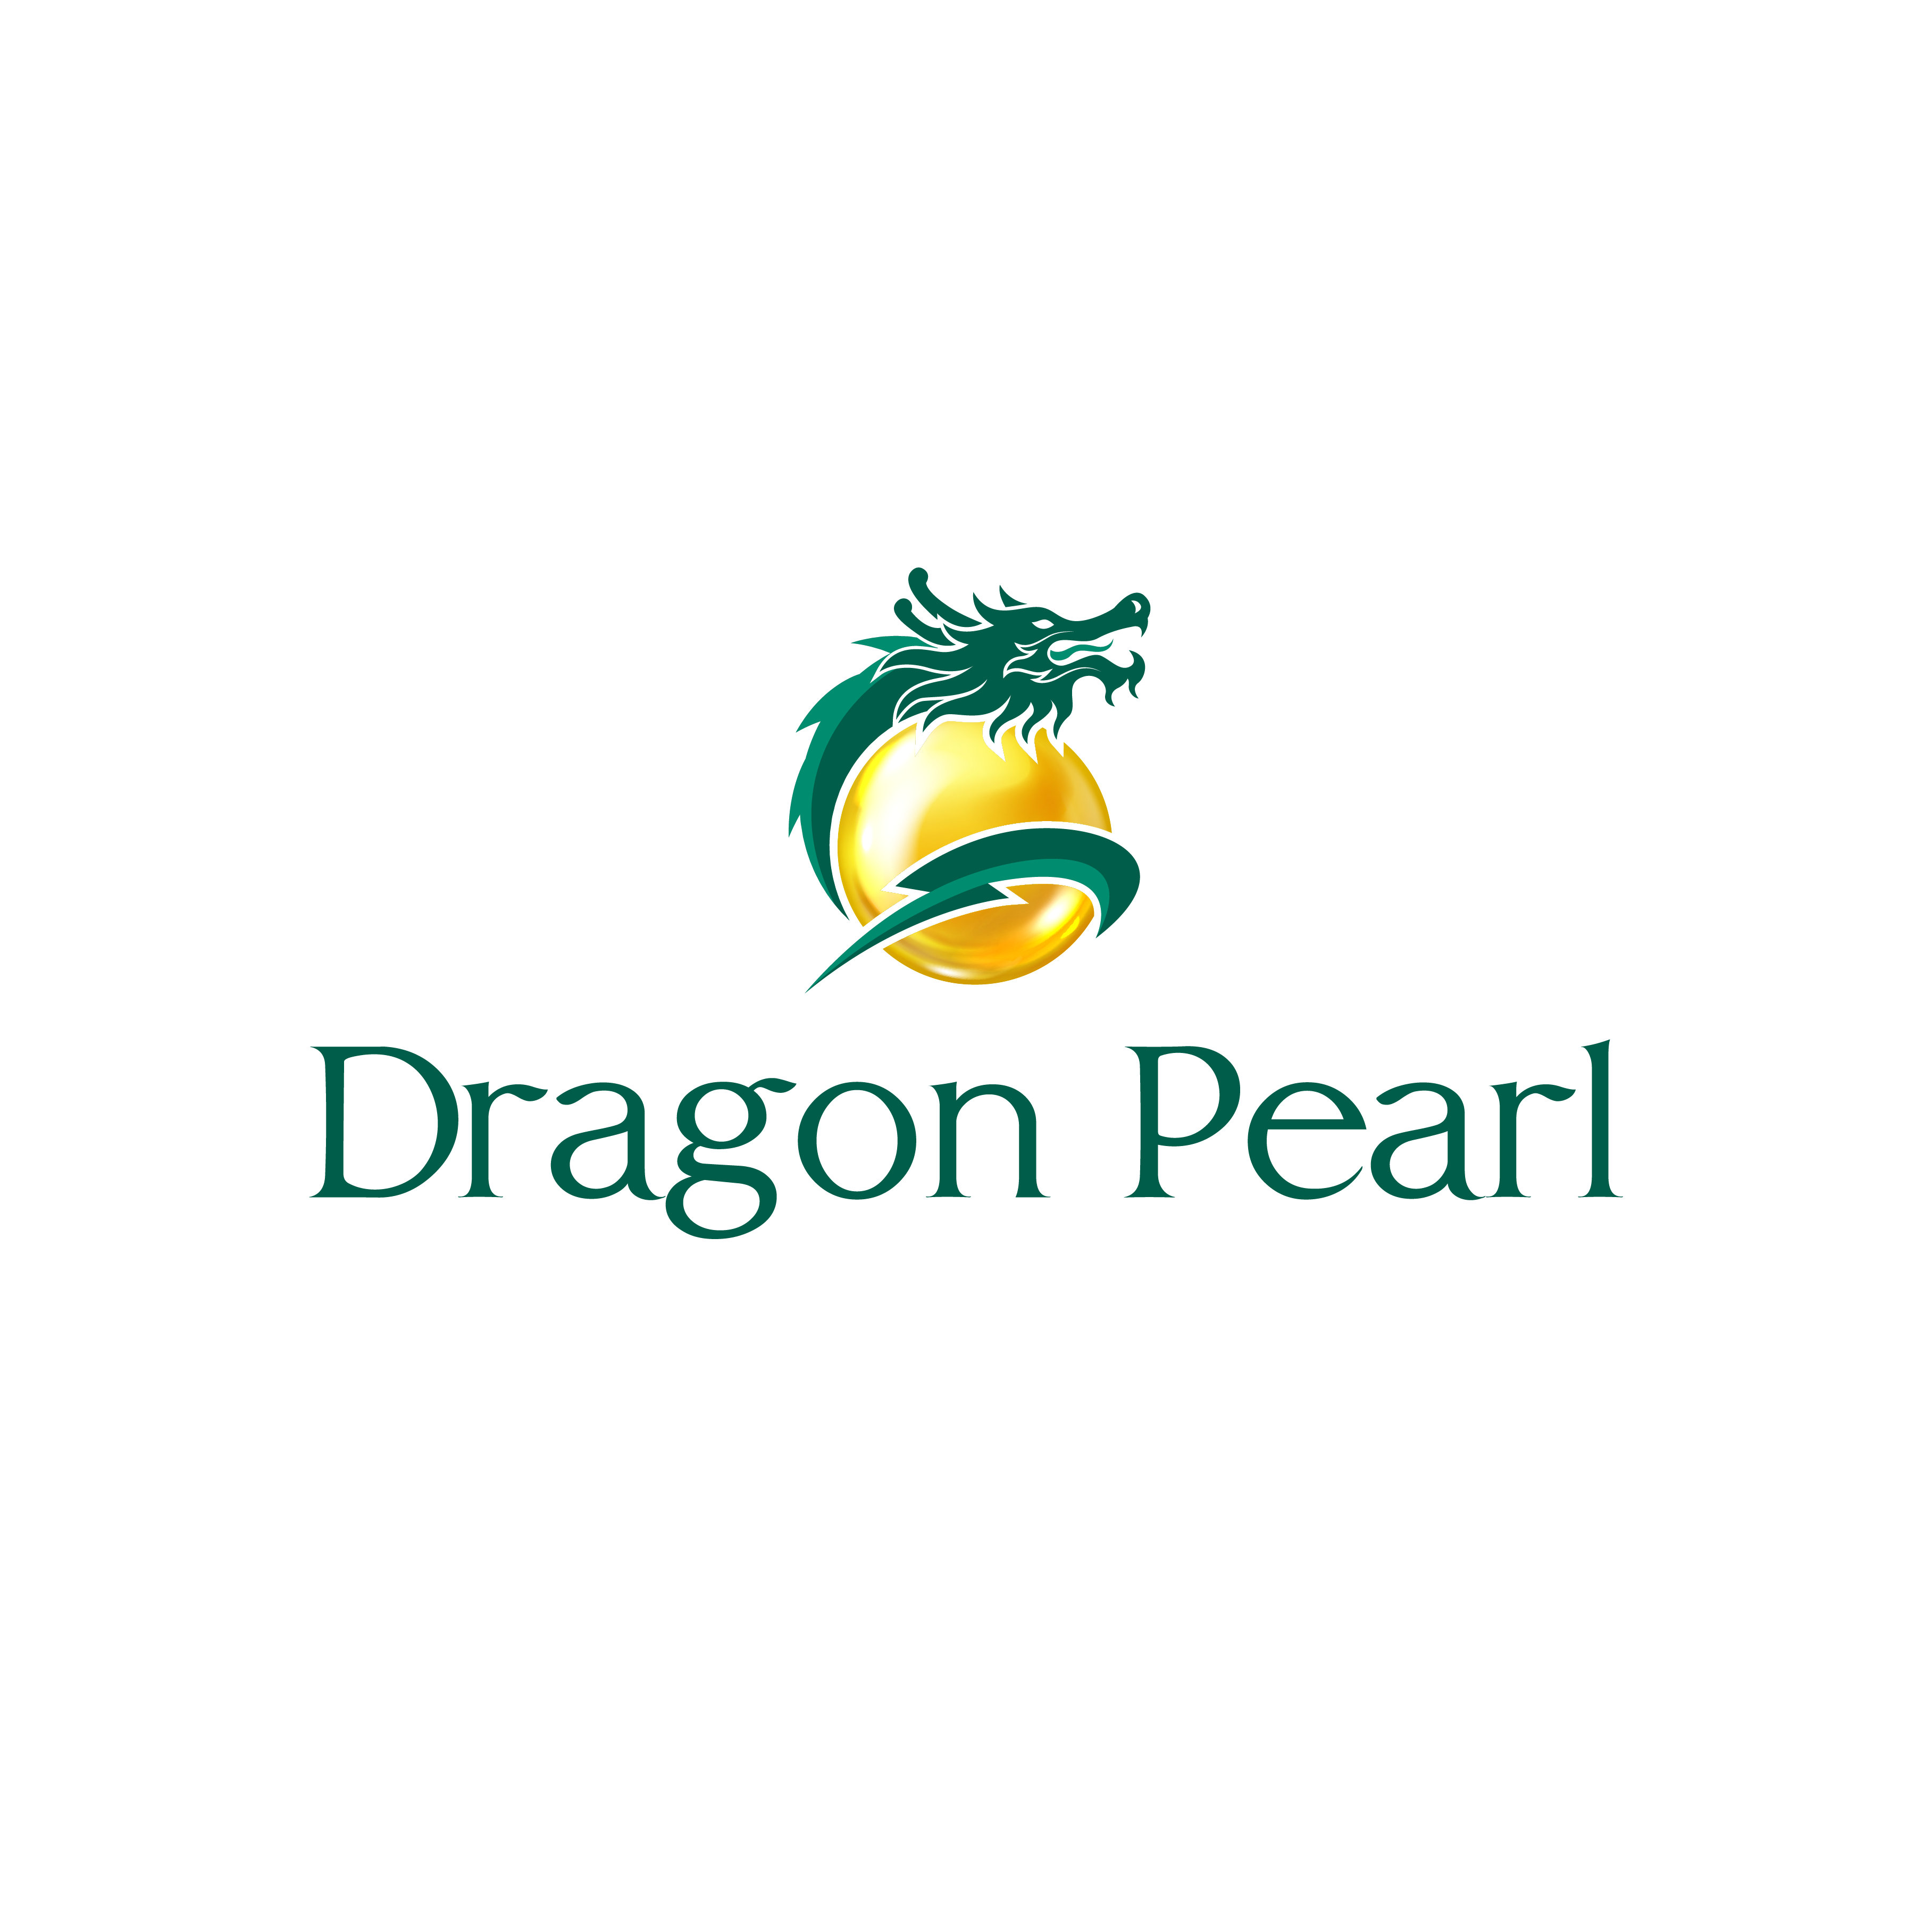 DRAGON PEARL LONG AN -【WEBSITE CHỦ ĐẦU TƯ】